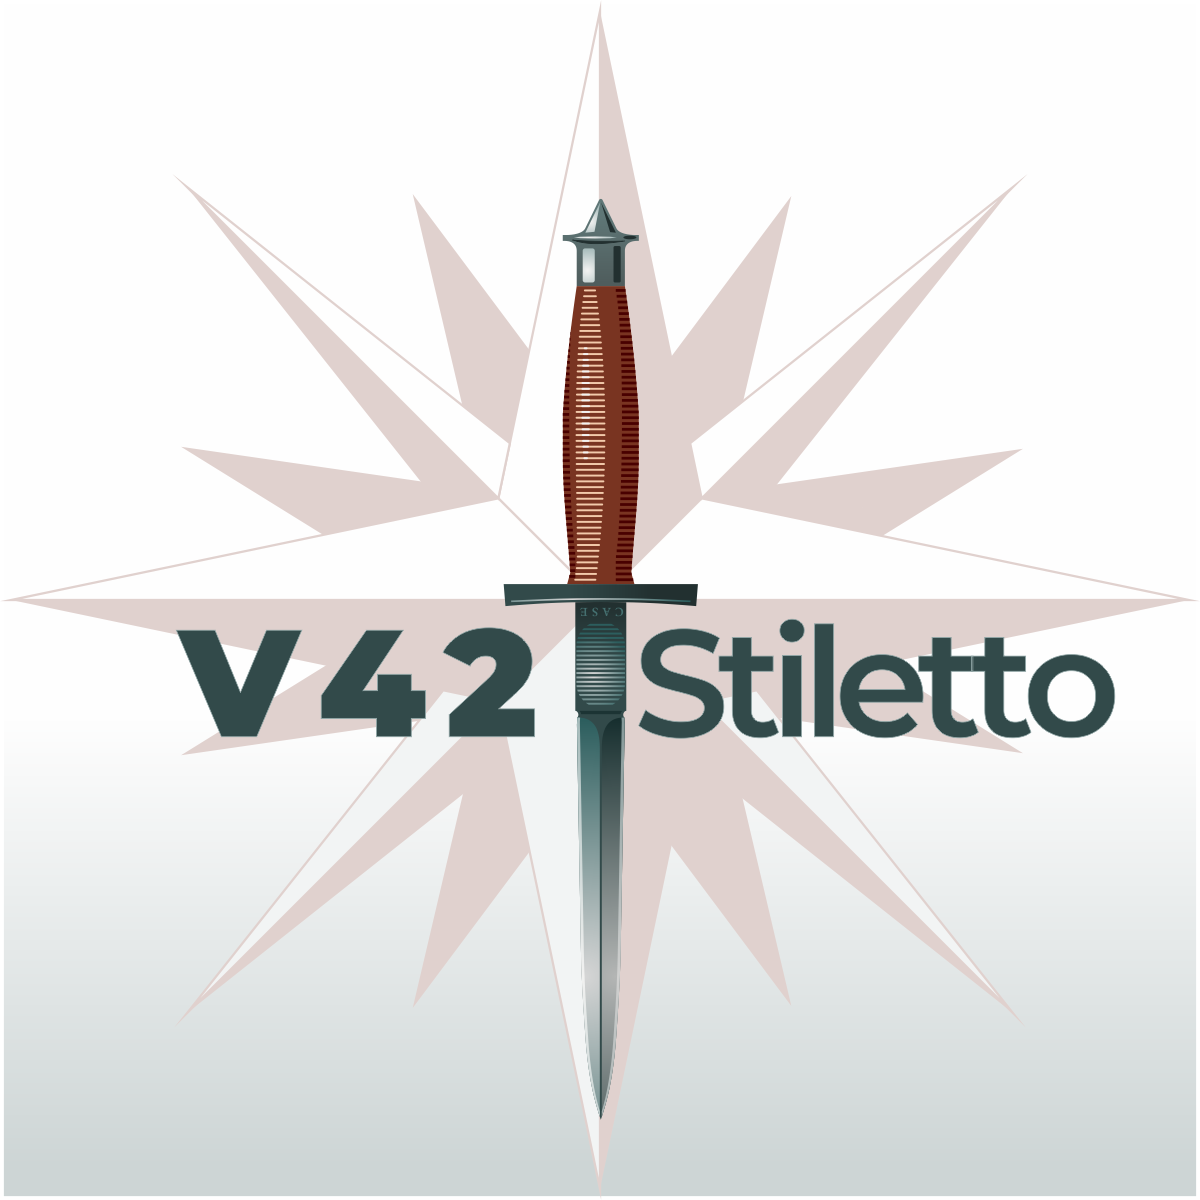 rysunek wektorowy bagnetu typ C24 Stiletto